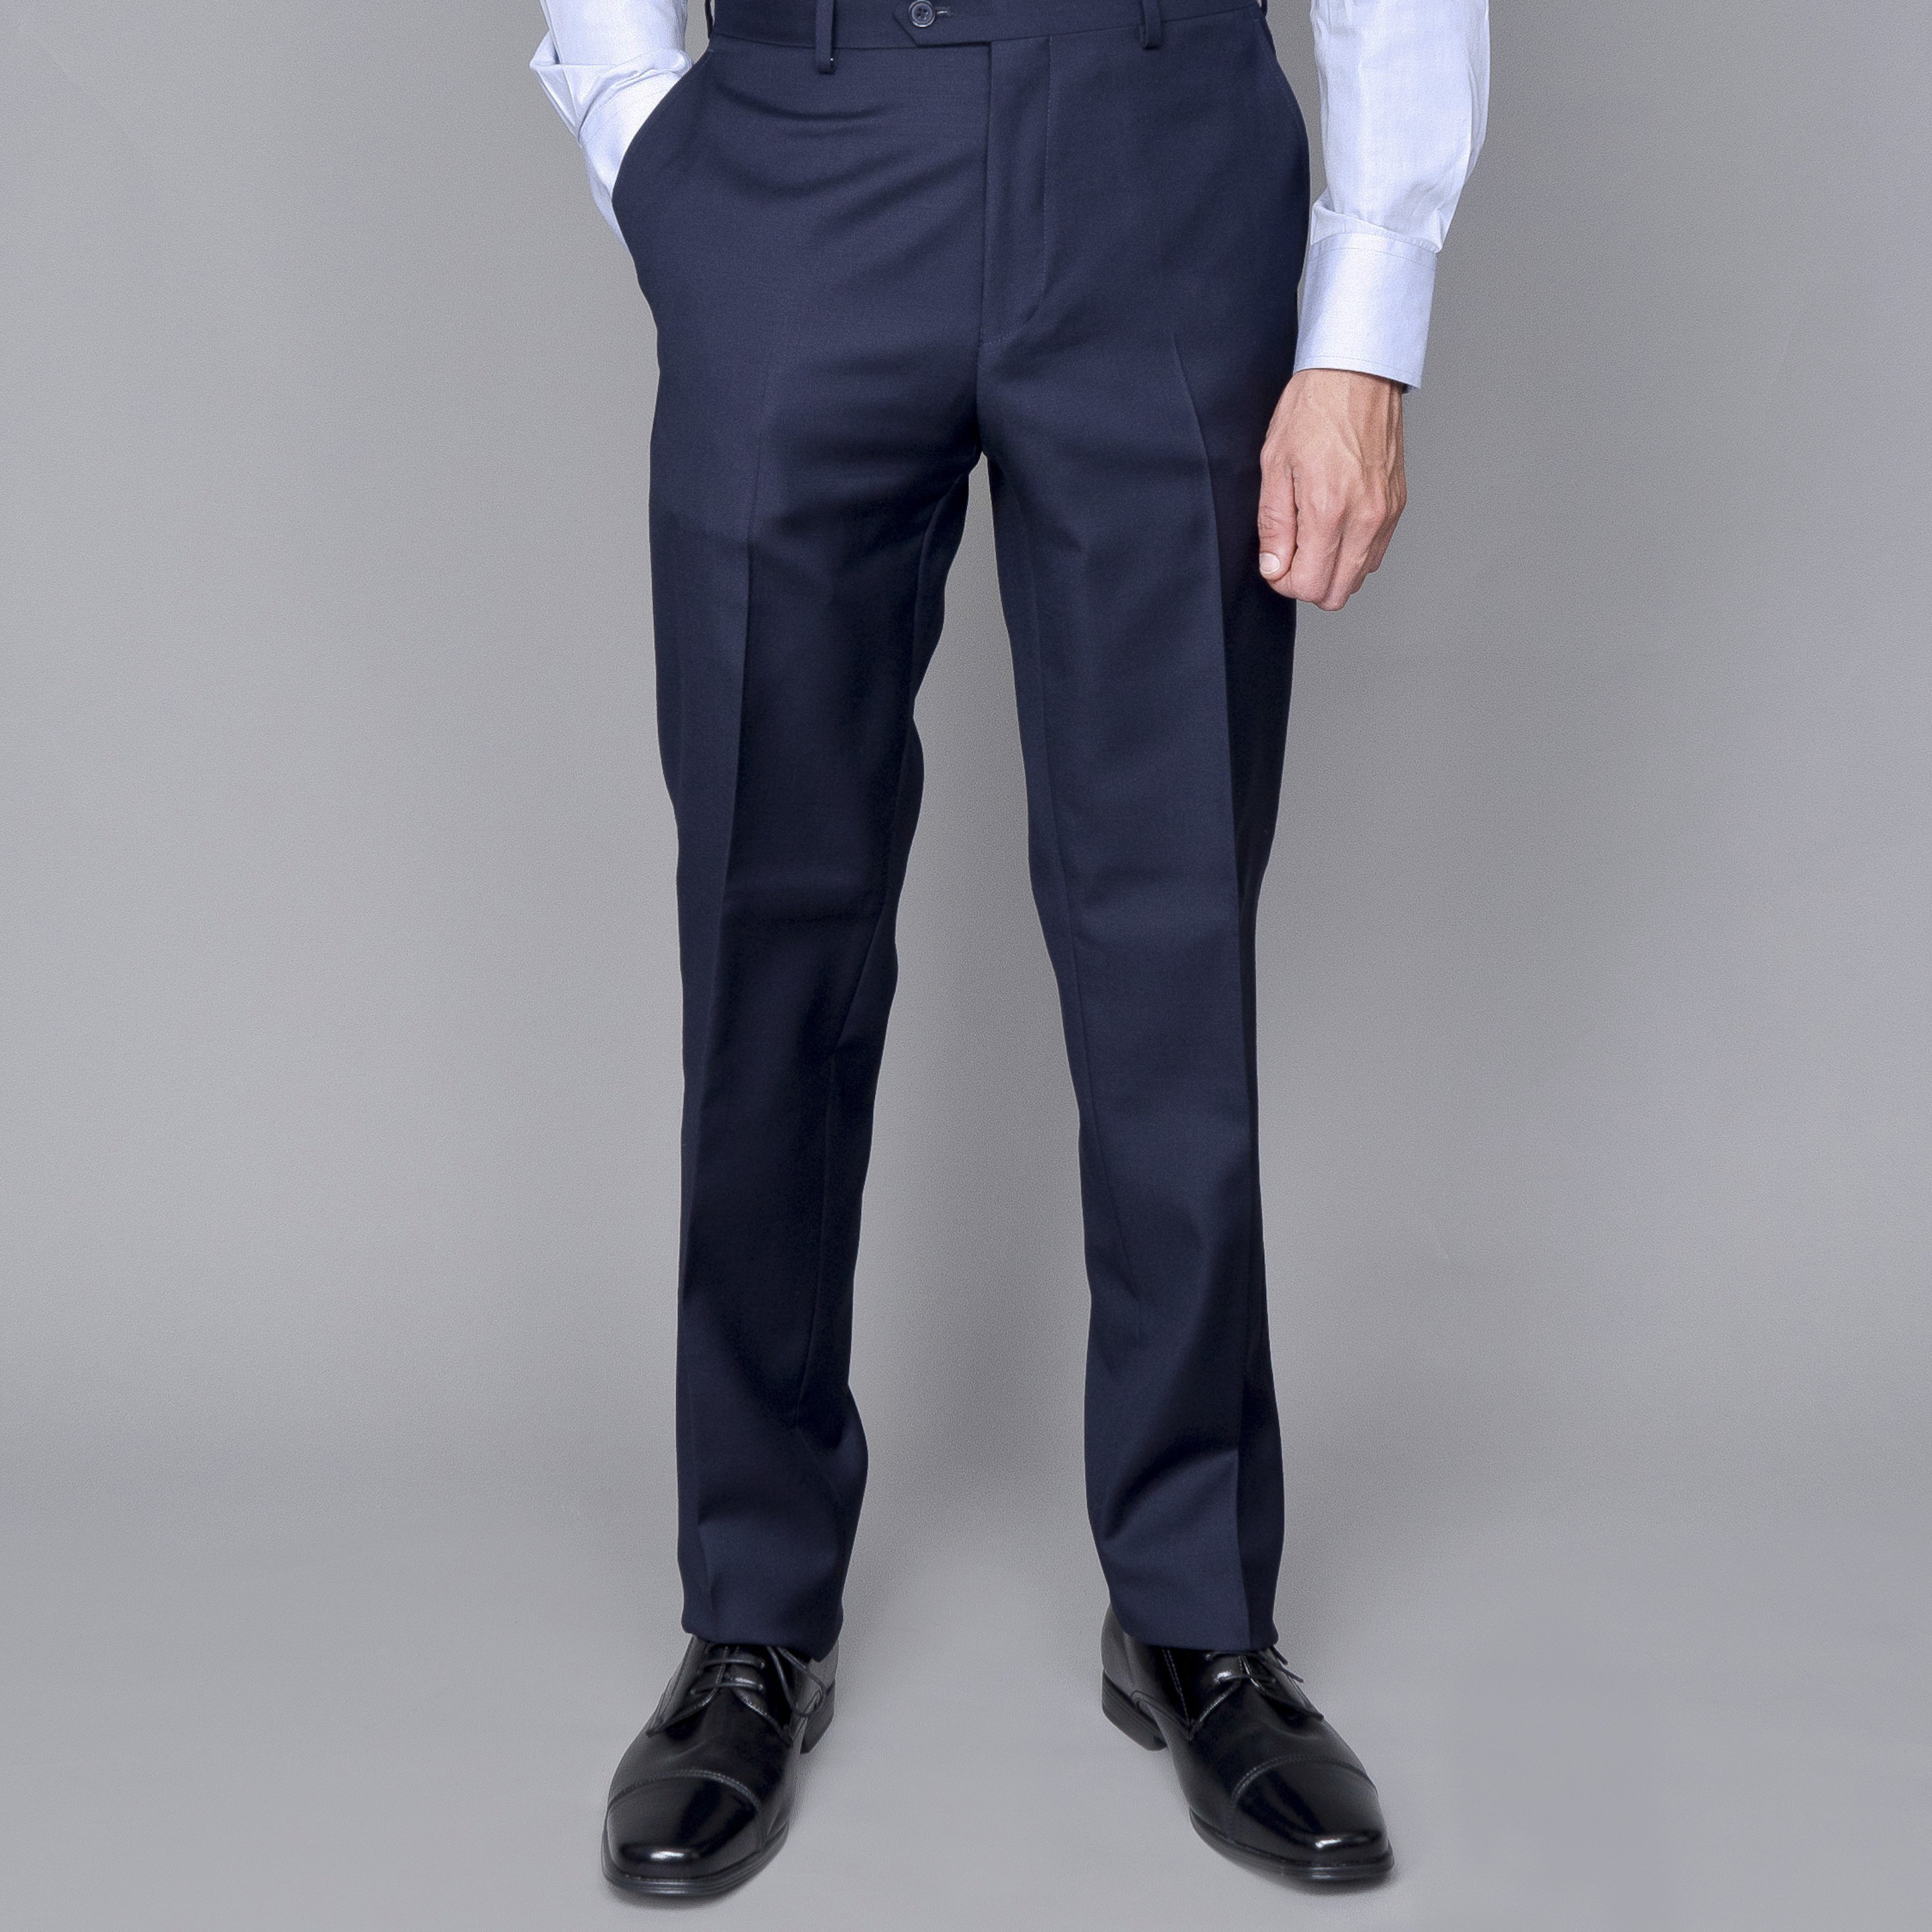 Men Pants office Casual |Men formal pants| Men Party club pants SAINLY